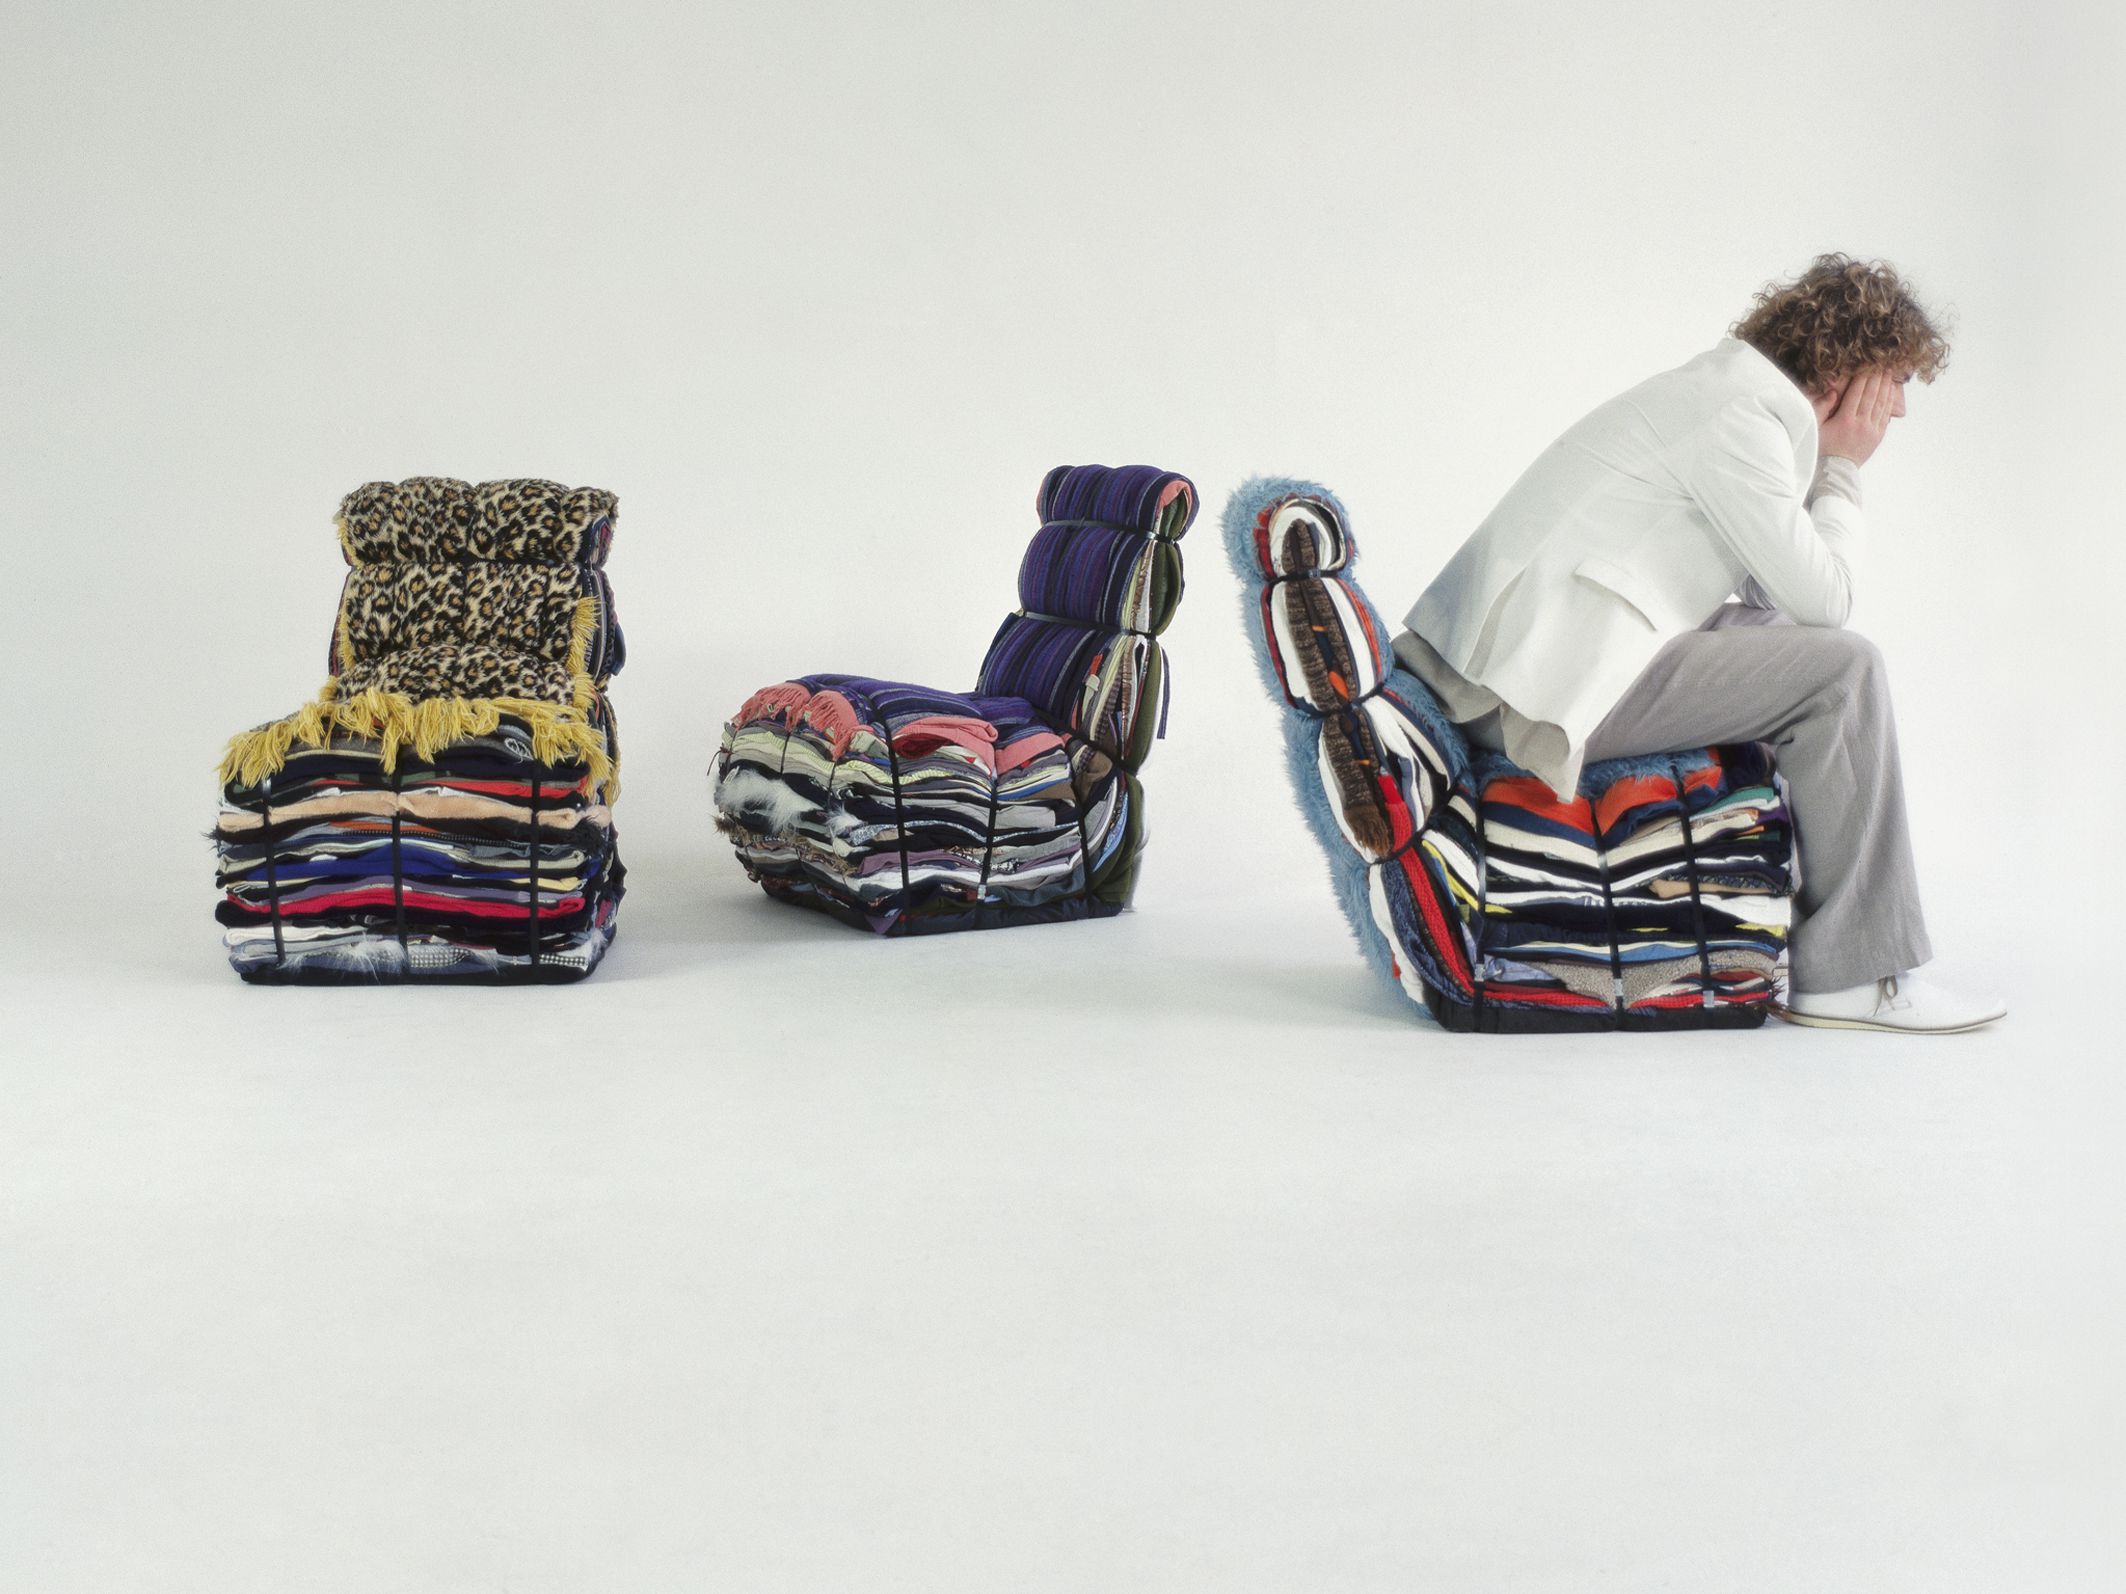 Bir sandalye yalnızca oturulacak bir mobilya değildir; aynı zamanda birinin kendini ifade edebileceği bir araçtır. (Intro to dutch design)